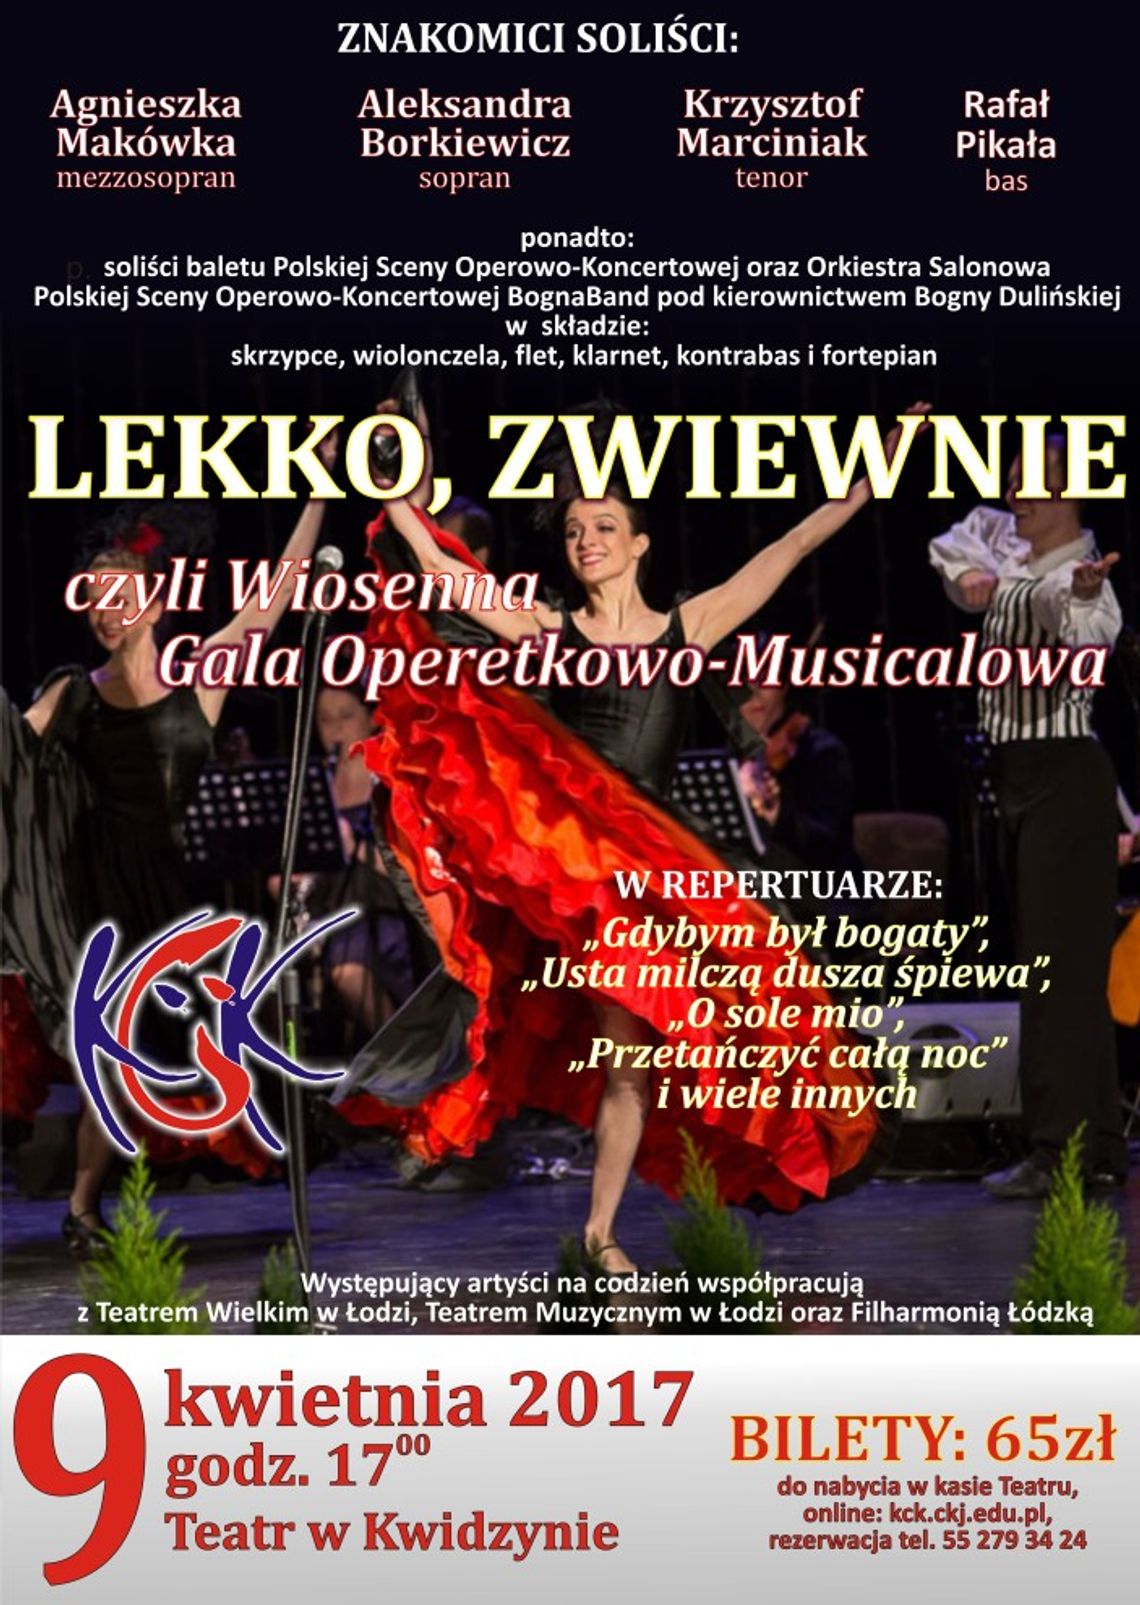 Wiosenna Gala Operetkowo-Musicalowa.